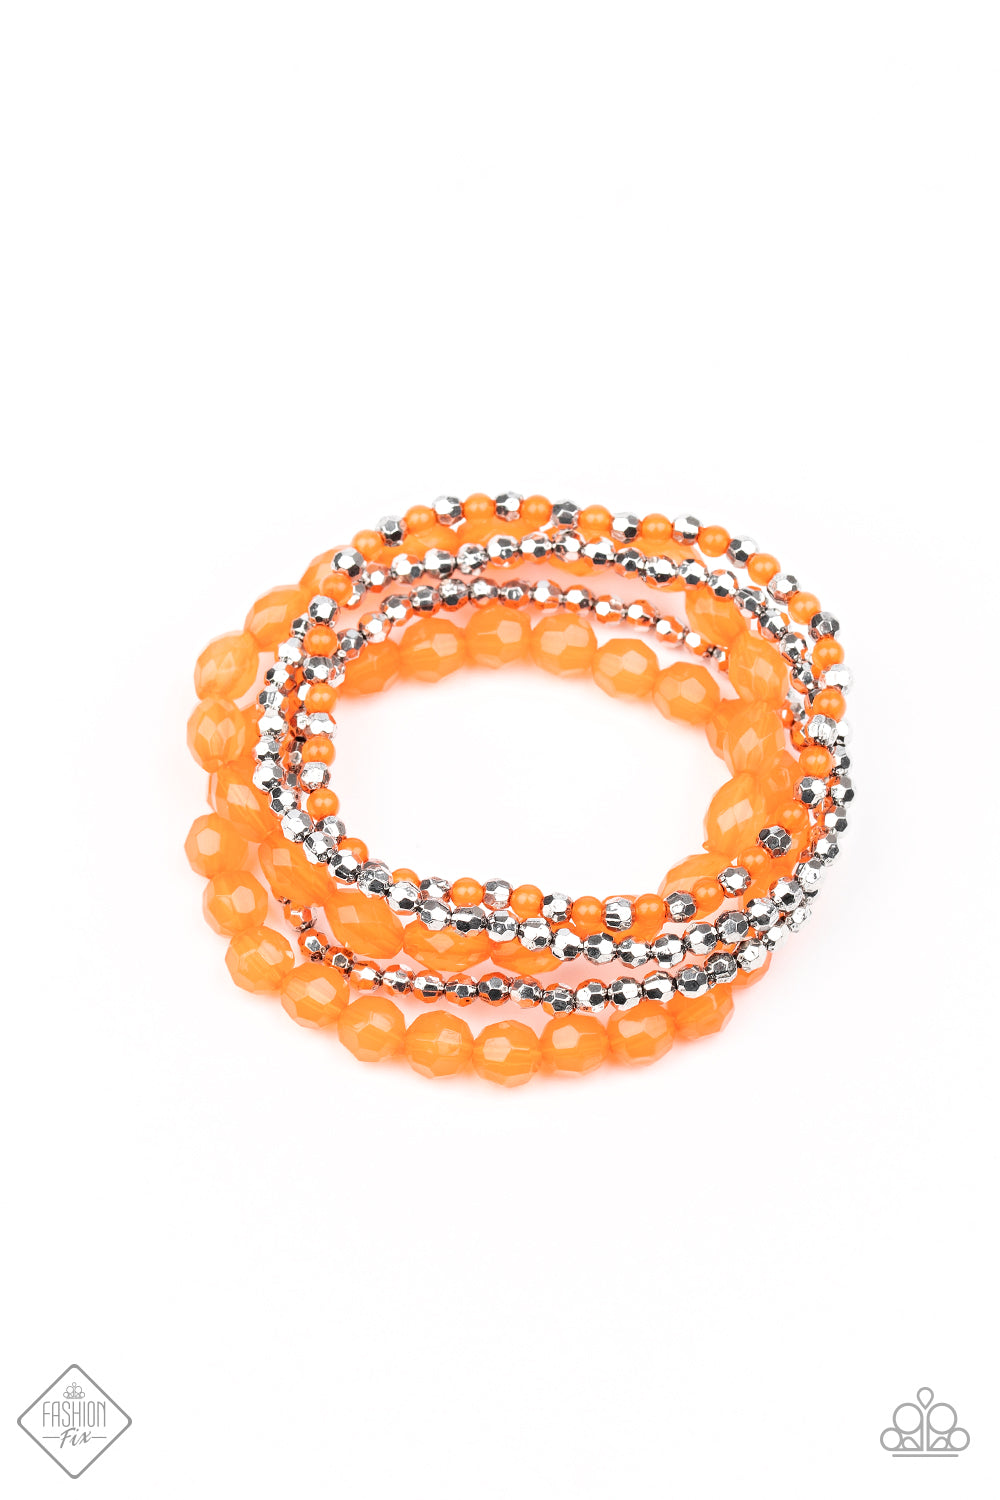 Sugary Sweet Orange
Bracelet Paparazzi